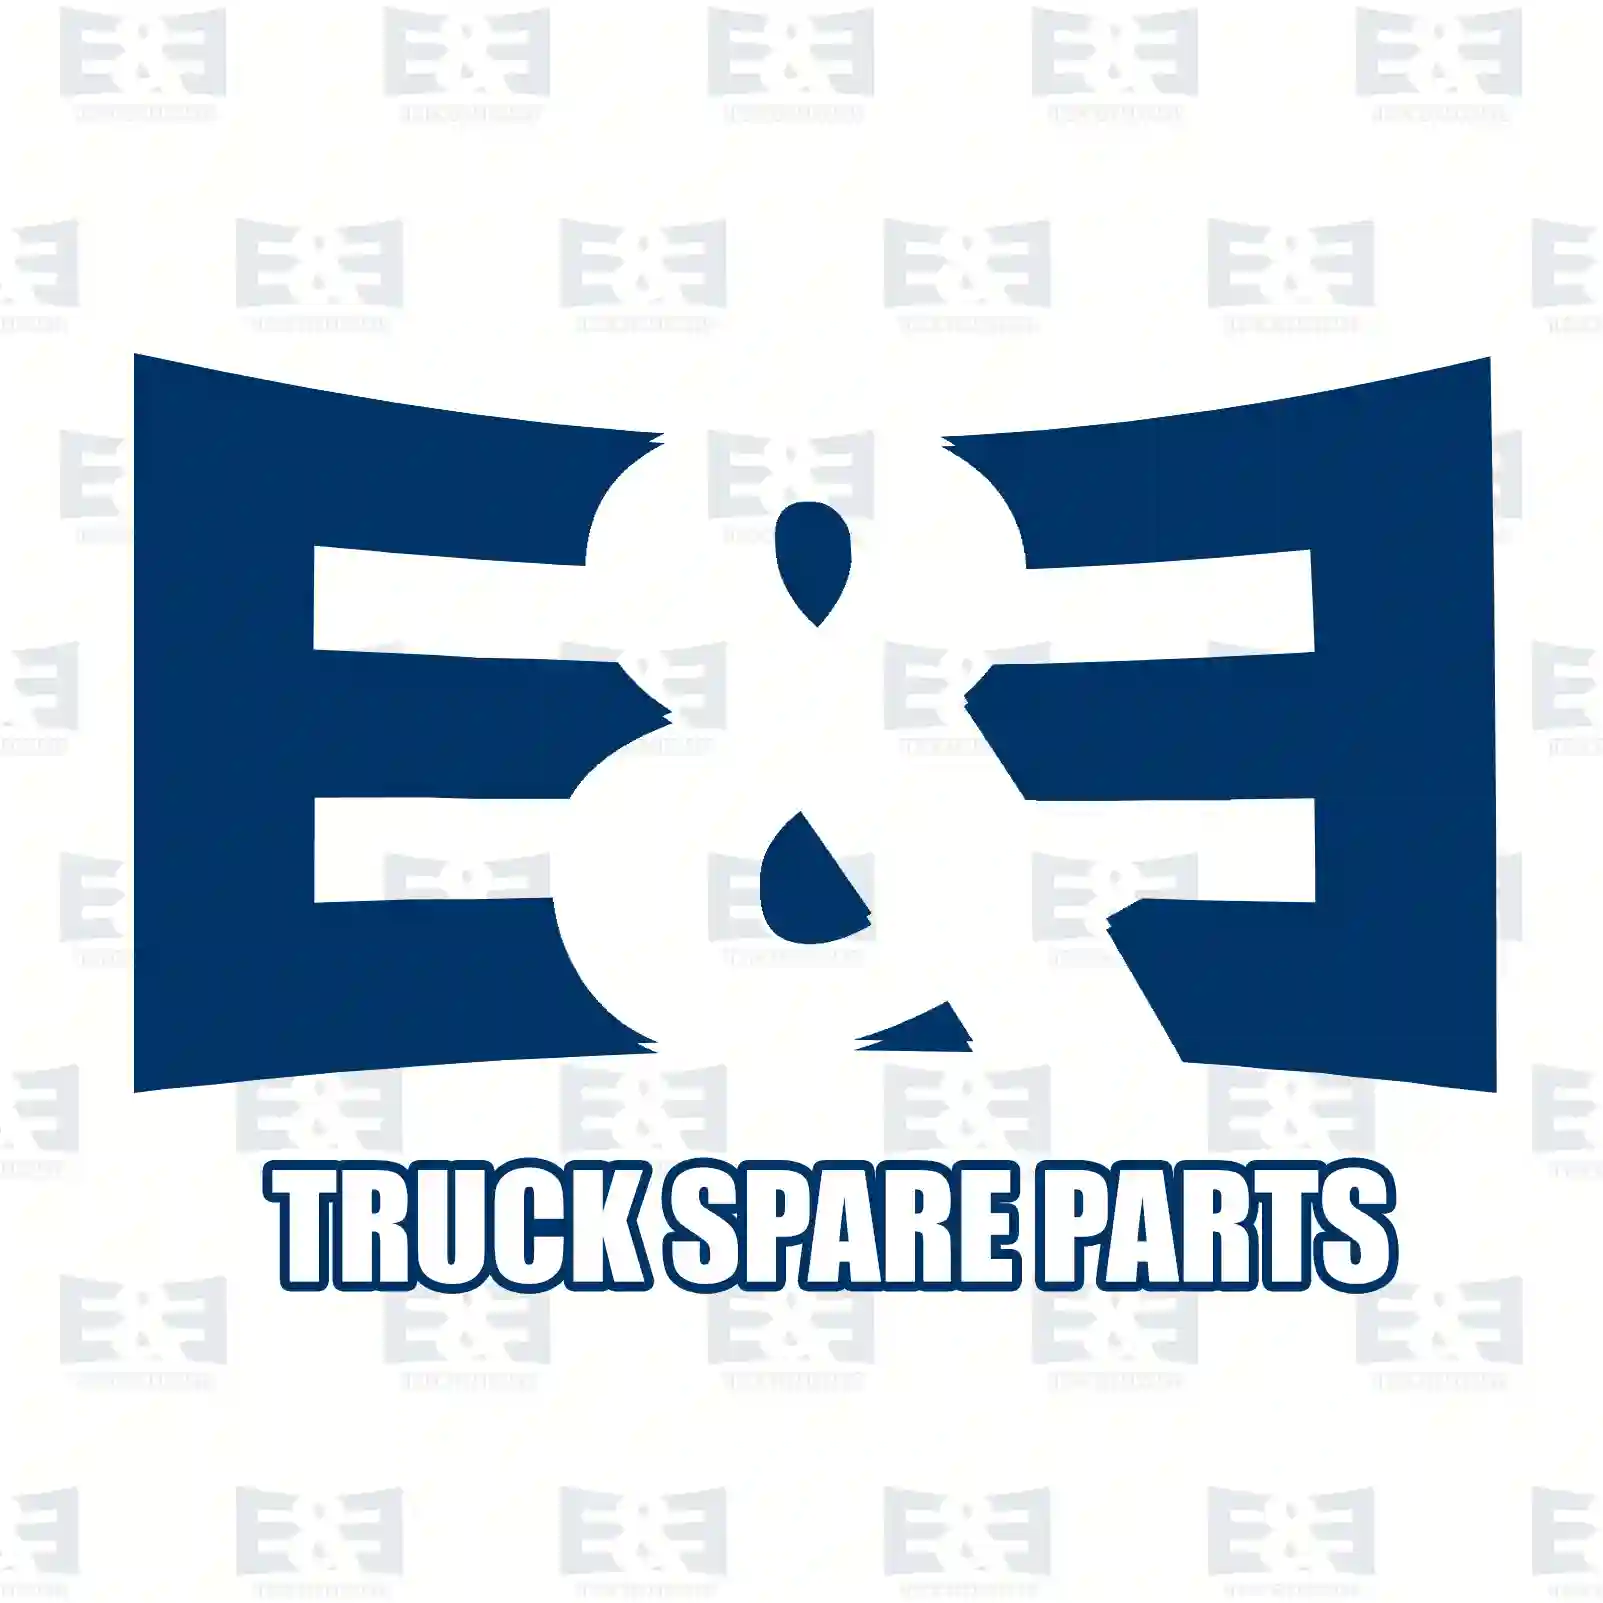 Guide frame, 2E2285133, , ||  2E2285133 E&E Truck Spare Parts | Truck Spare Parts, Auotomotive Spare Parts Guide frame, 2E2285133, , ||  2E2285133 E&E Truck Spare Parts | Truck Spare Parts, Auotomotive Spare Parts